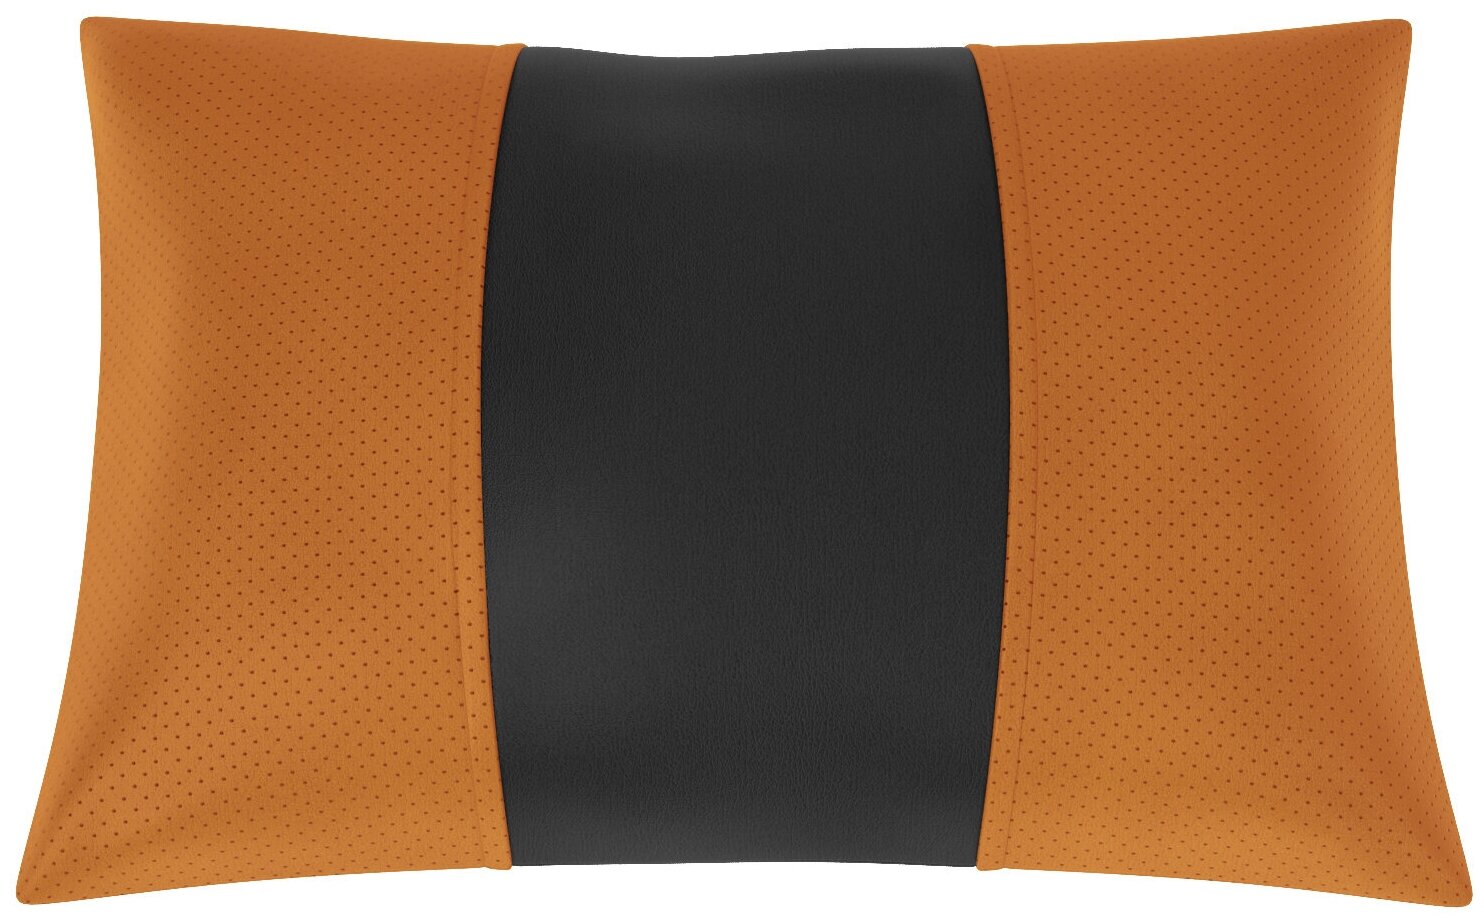 Автомобильная подушка для Lexus СТ-200H (Лексус Ст200н). Экокожа. Середина: чёрная гладкая экокожа. Боковины: оранжевая экокожа с перфорацией. 1 шт.